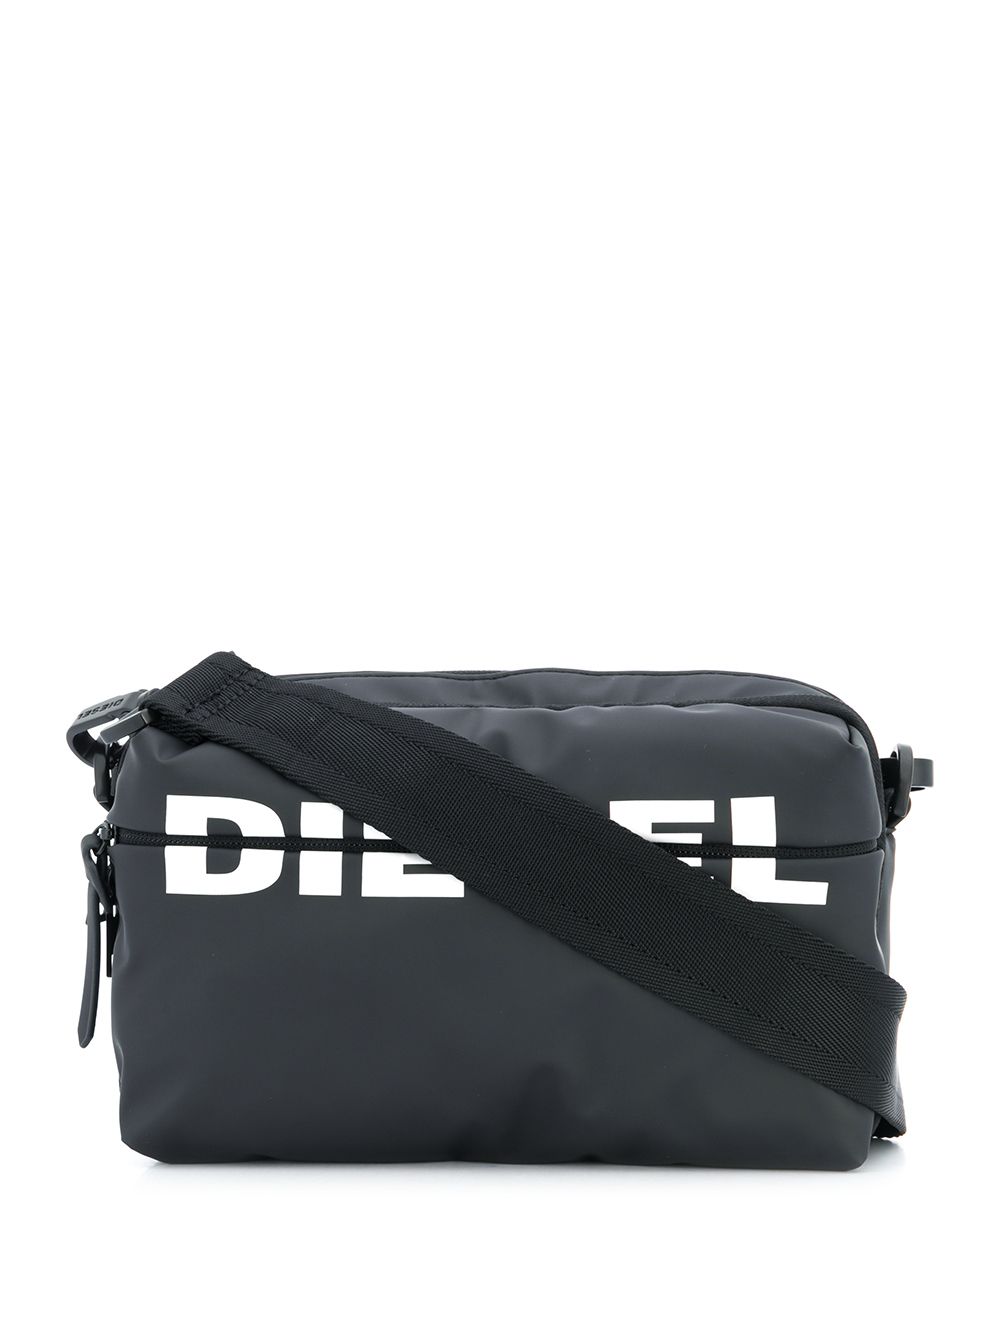 фото Diesel сумка через плечо с логотипом